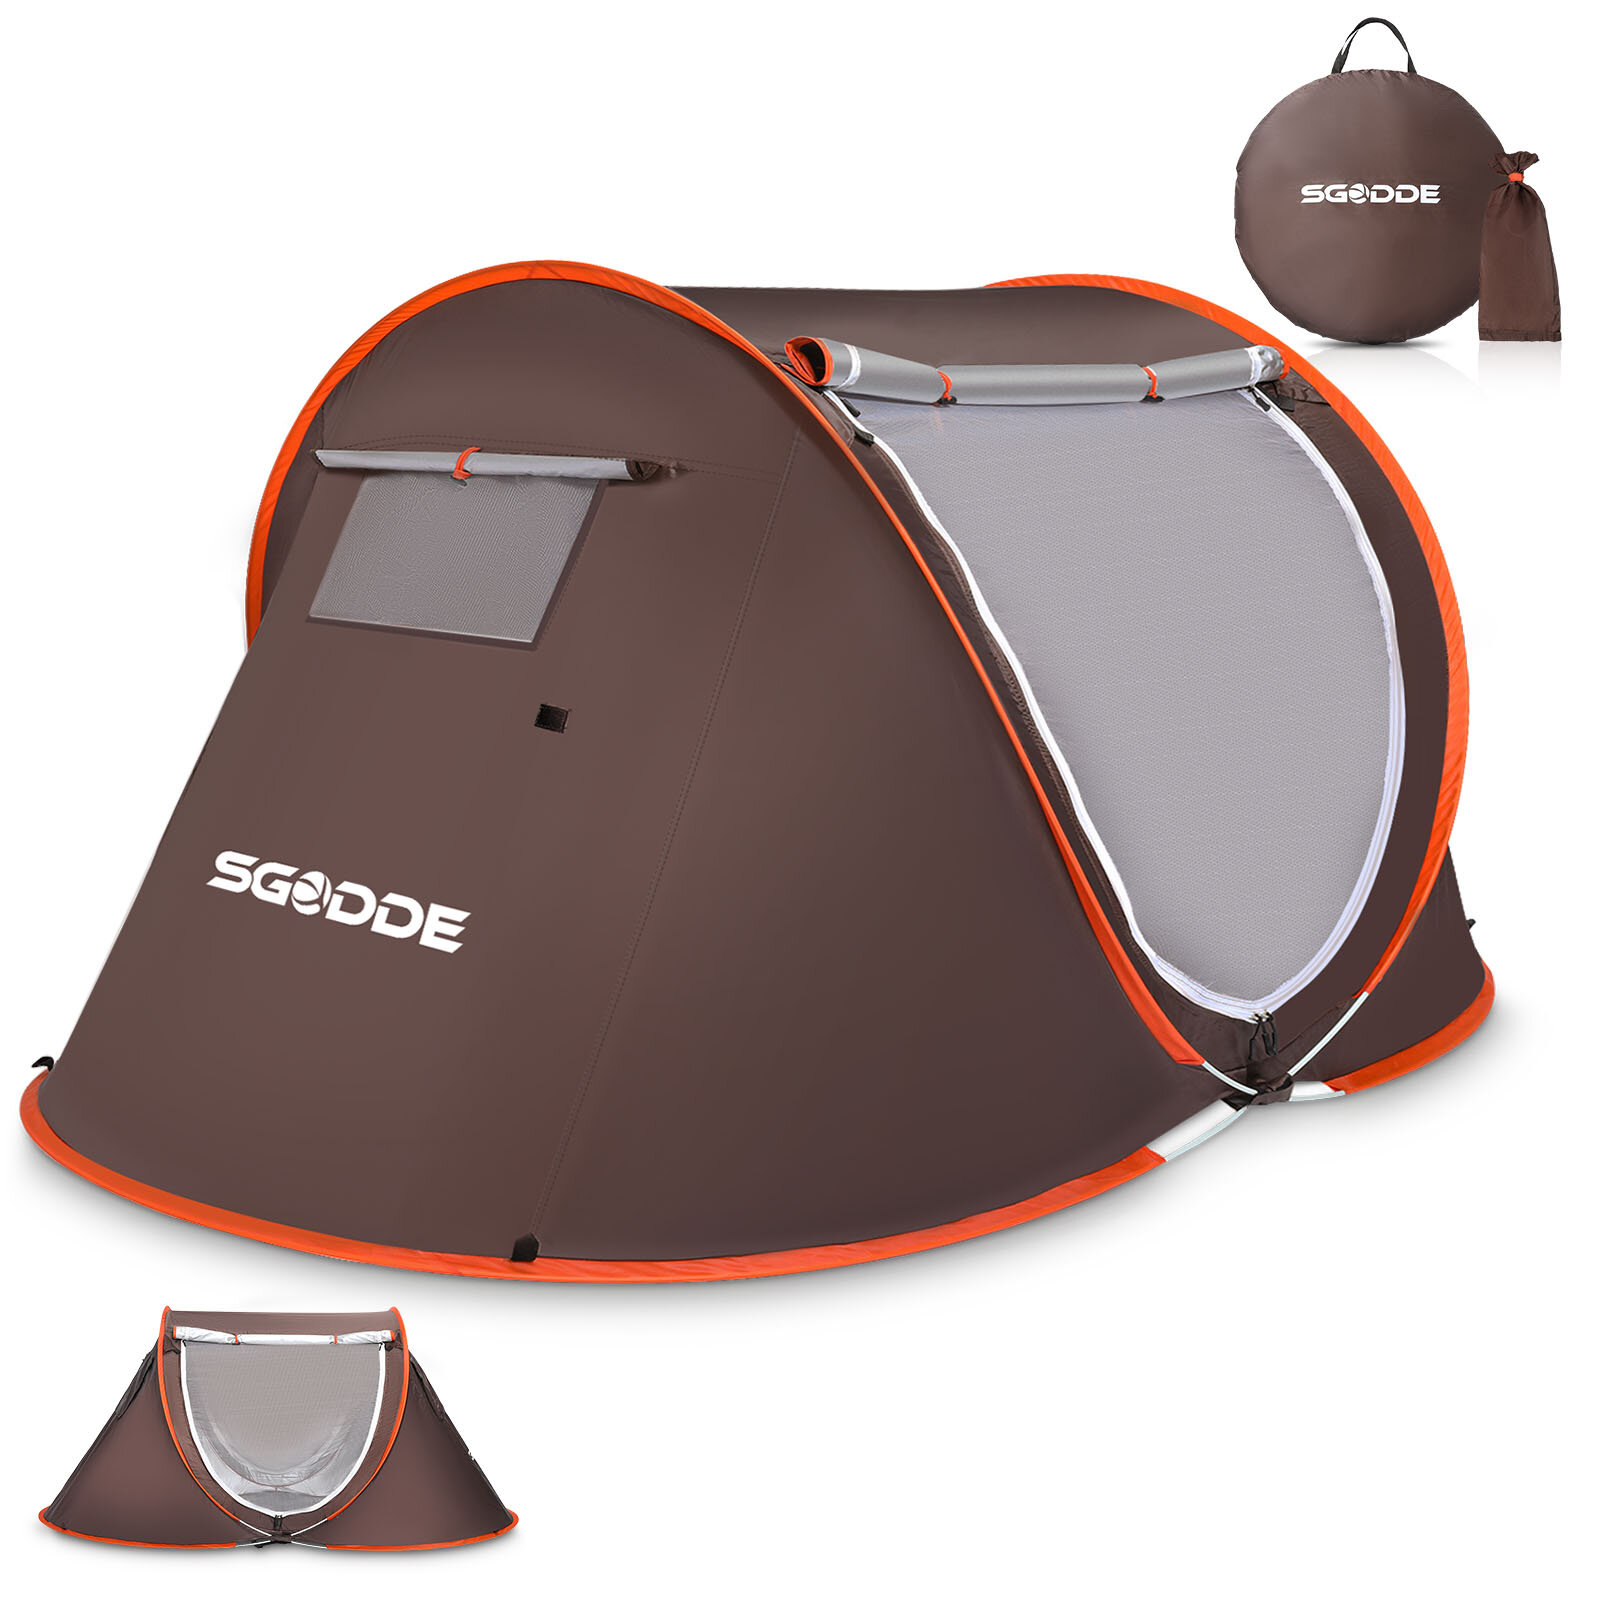 SGODDE 2-3 personnes tente automatique camping tente anti UV auvent tente étanche extérieur abri solaire